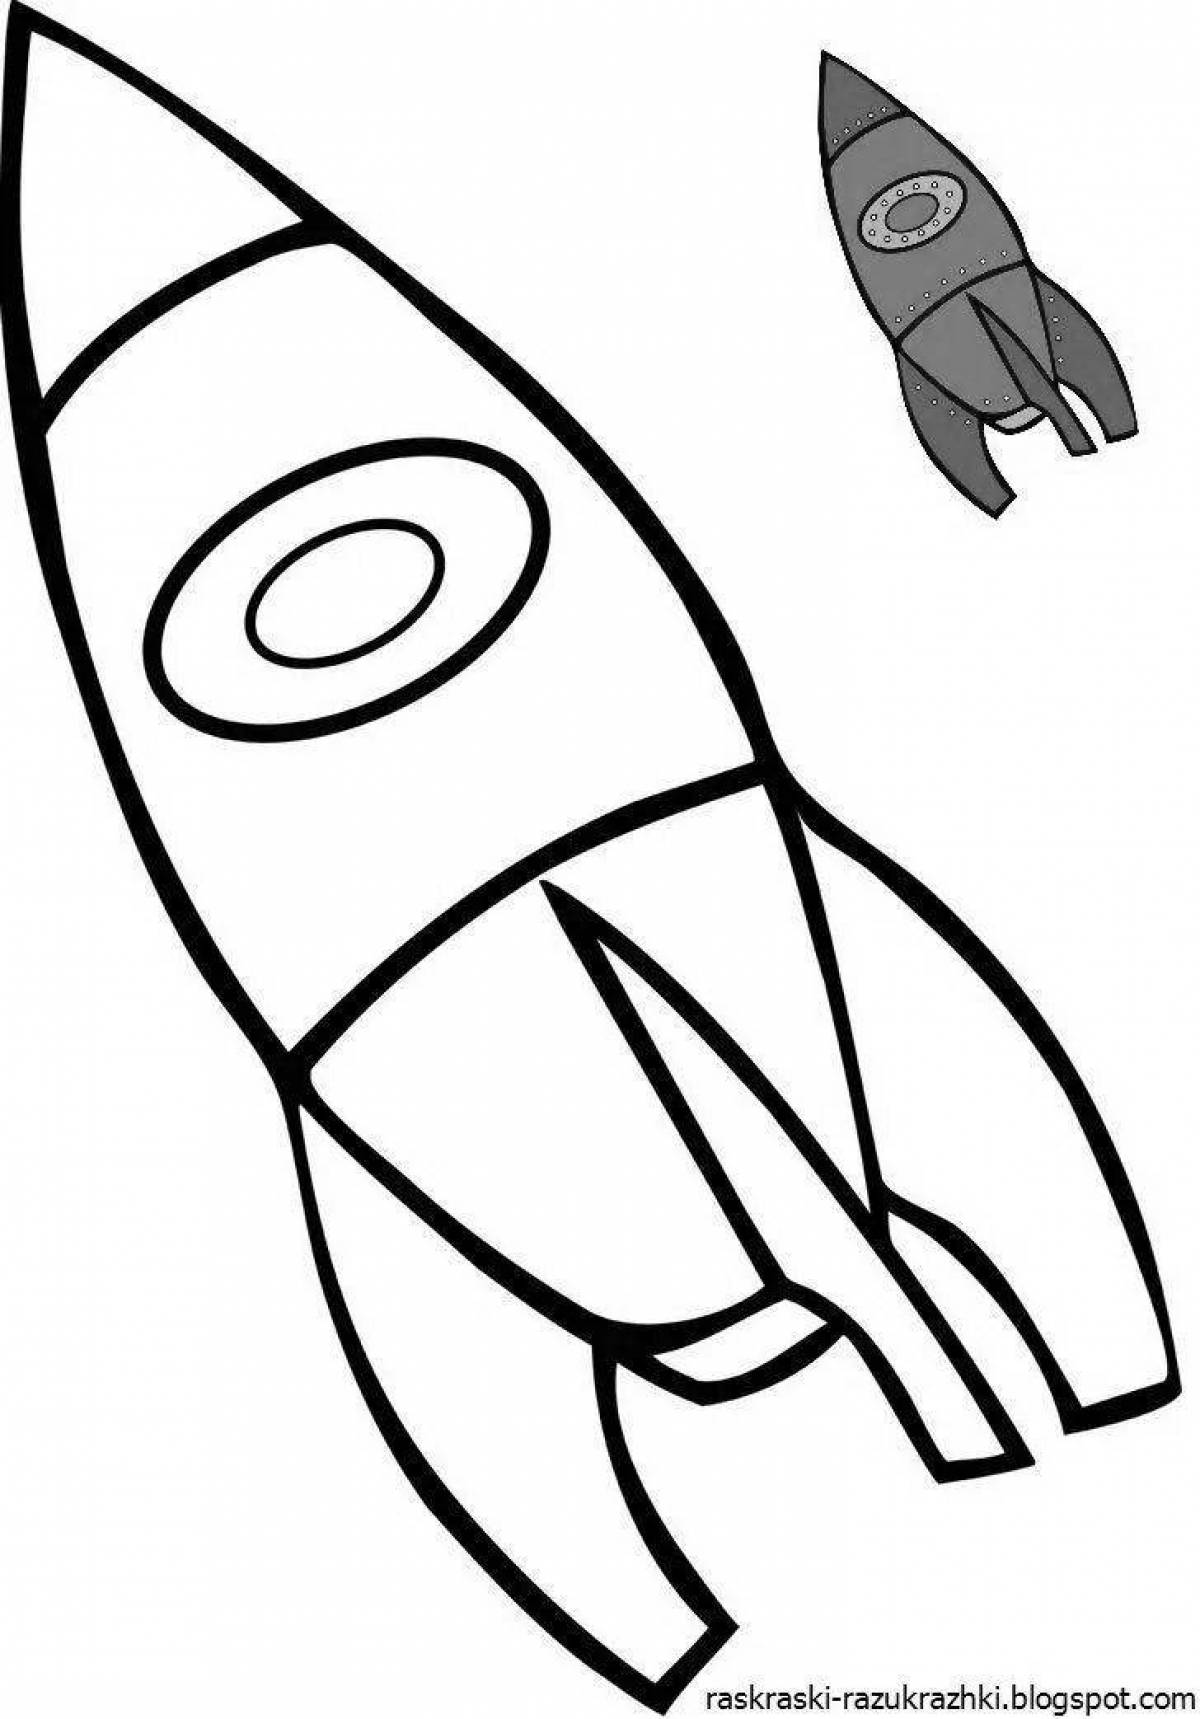 Заманчивый рисунок ракеты